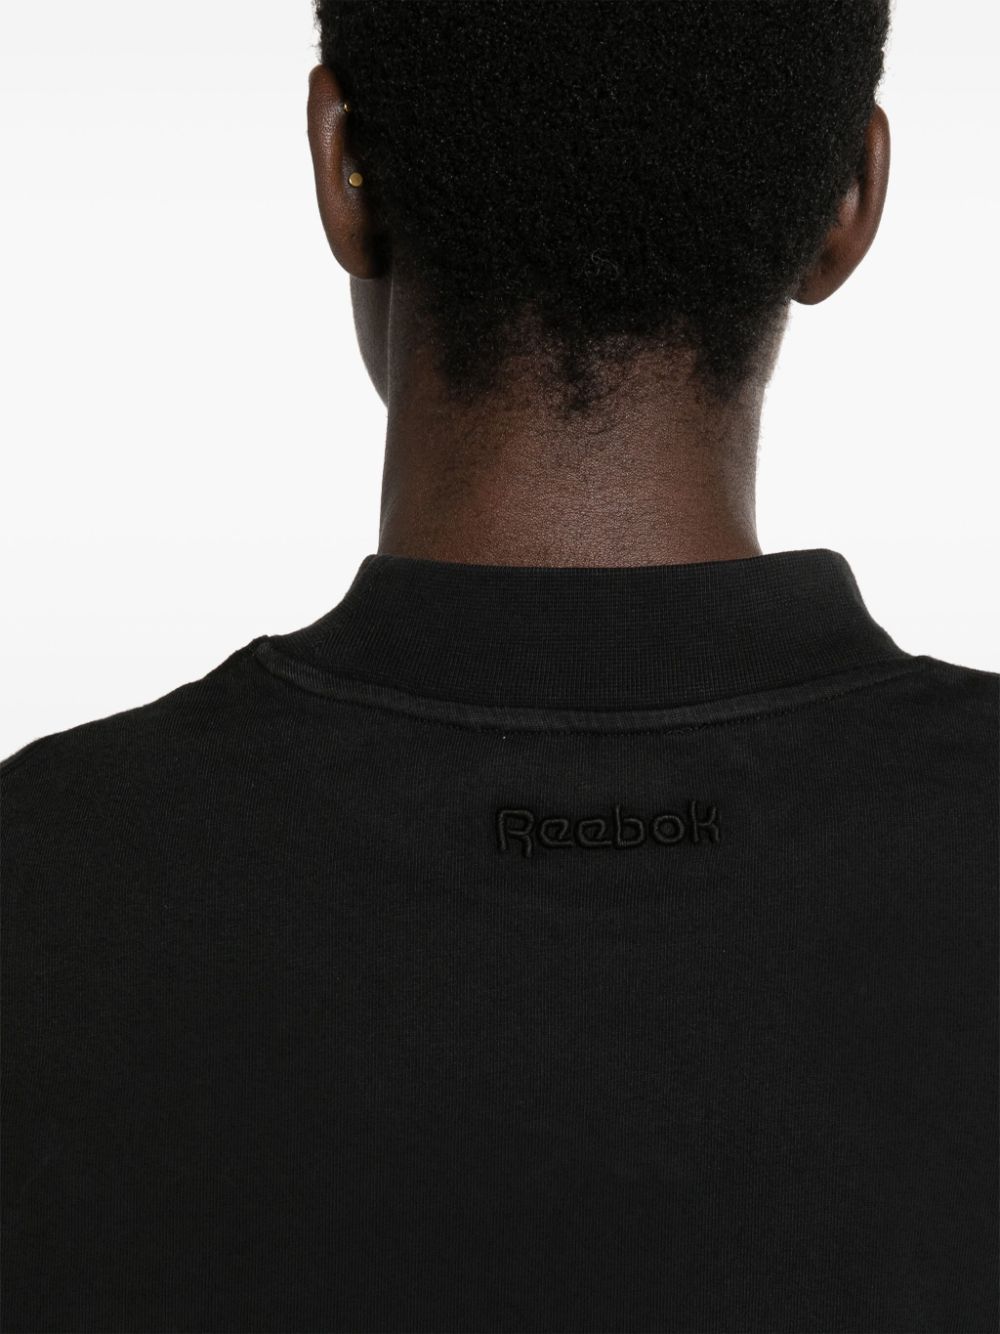 Shop Reebok Ltd Faded-effect Cotton Cropped T-shirt In Black